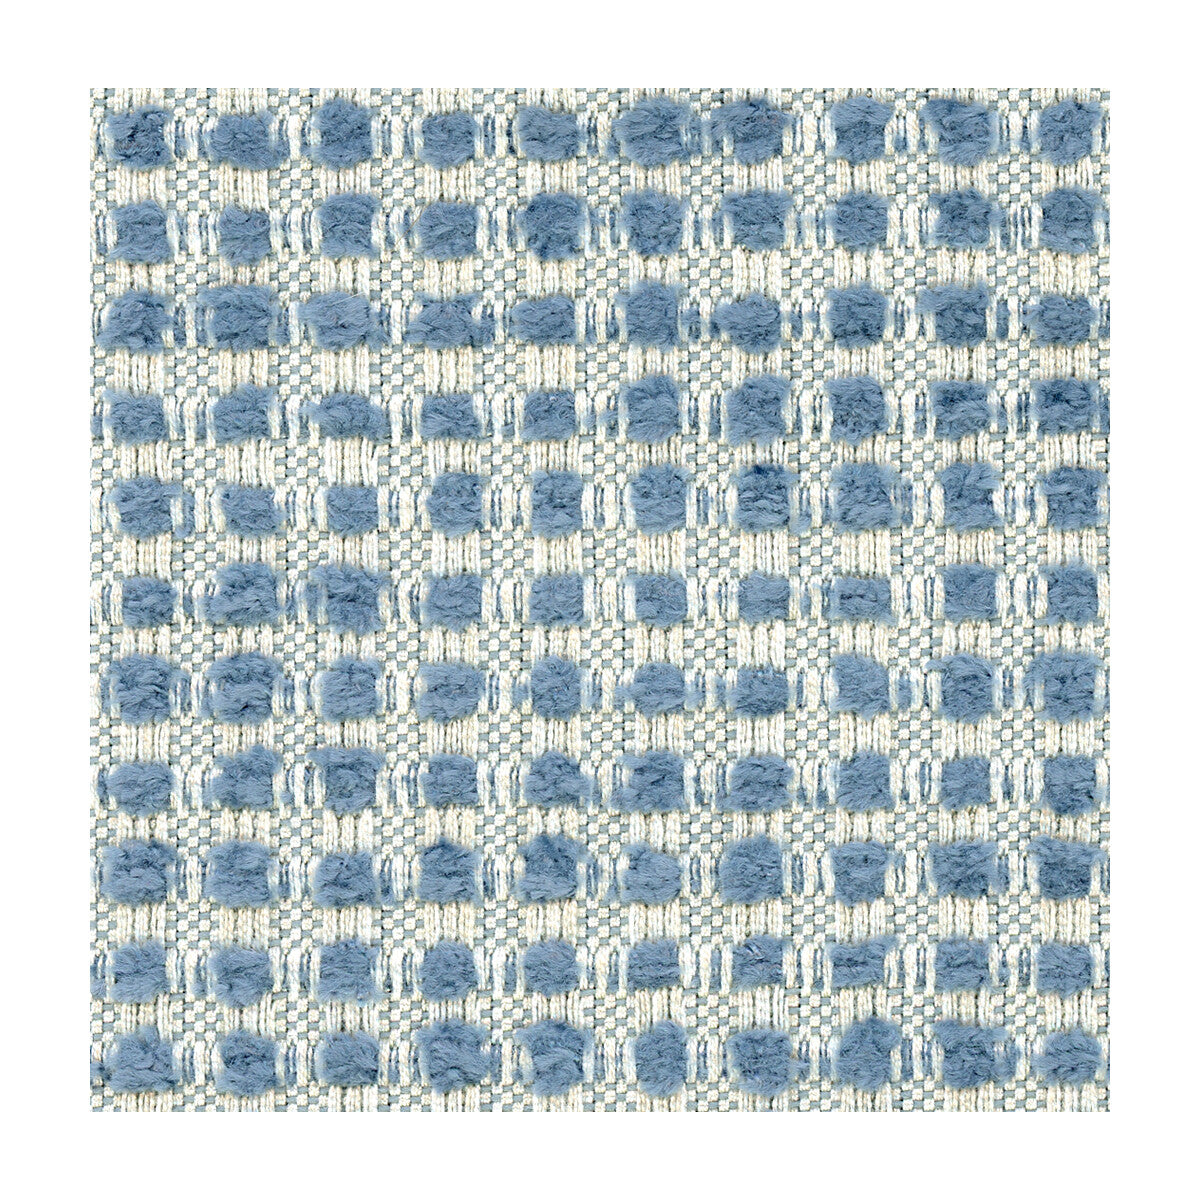 Kravet Design fabric in 31028-516 color - pattern 31028.516.0 - by Kravet Design